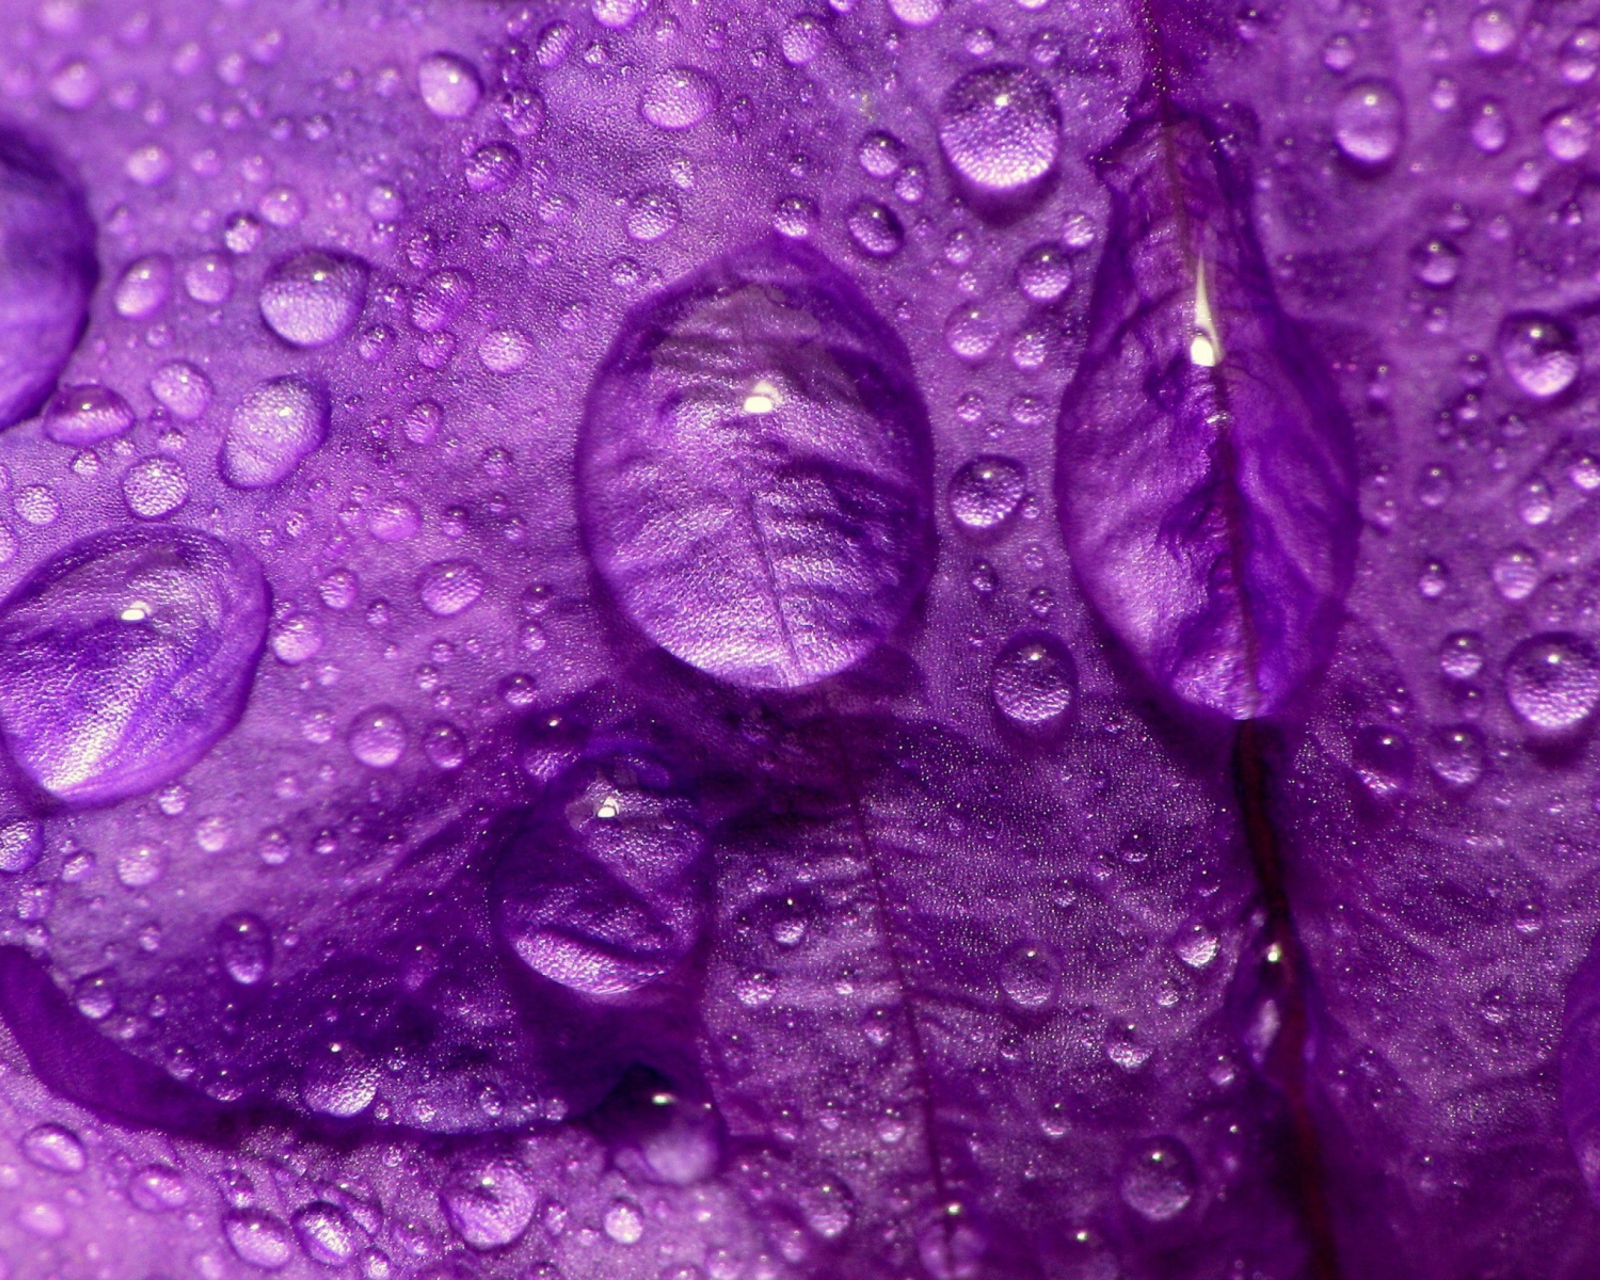 Обои Dew Drops On Violet Petals 1600x1280